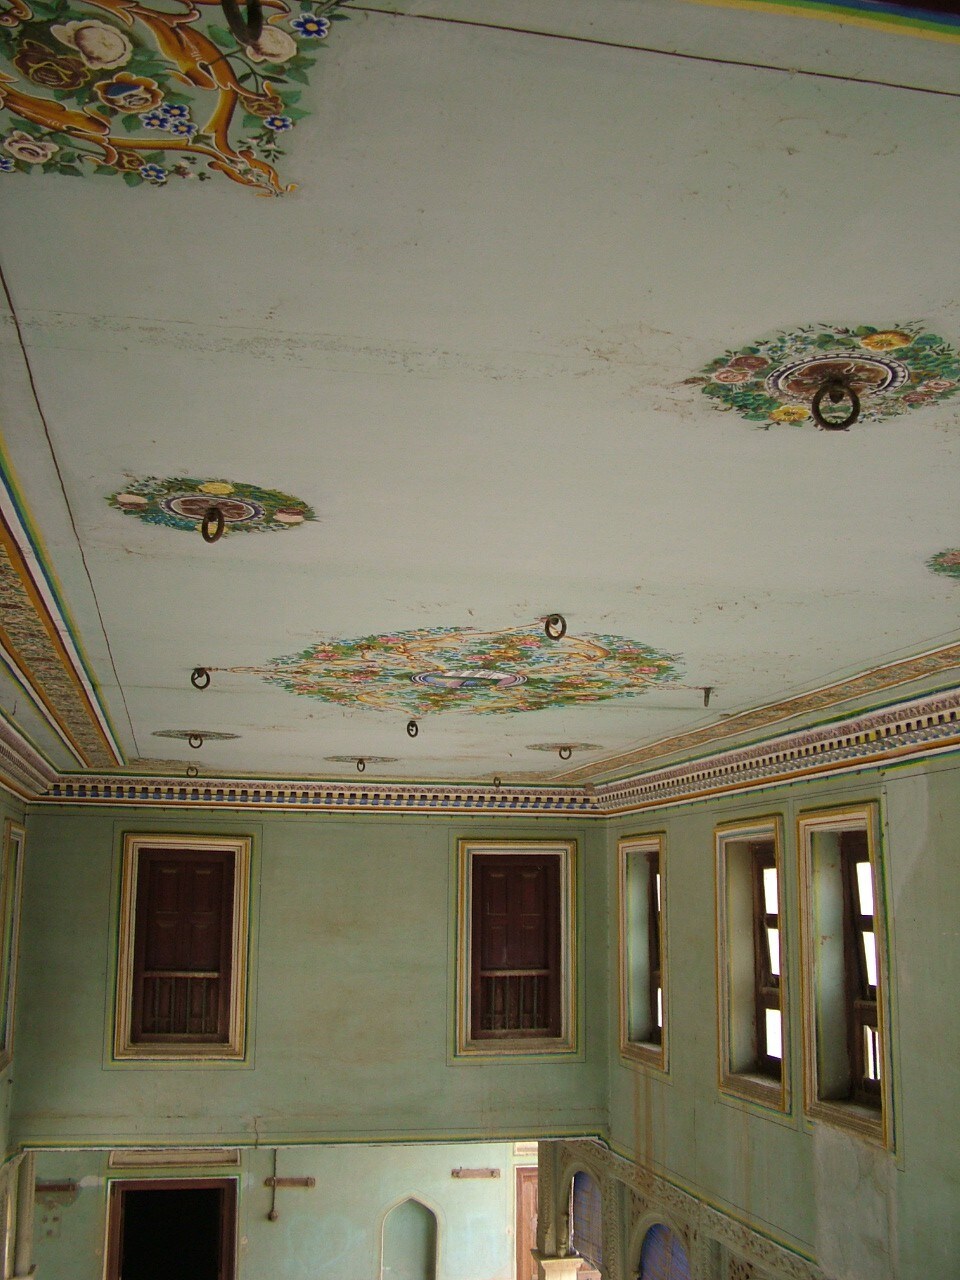 Parasrampuria Heritage Haveli (Mansion), Rajasthan